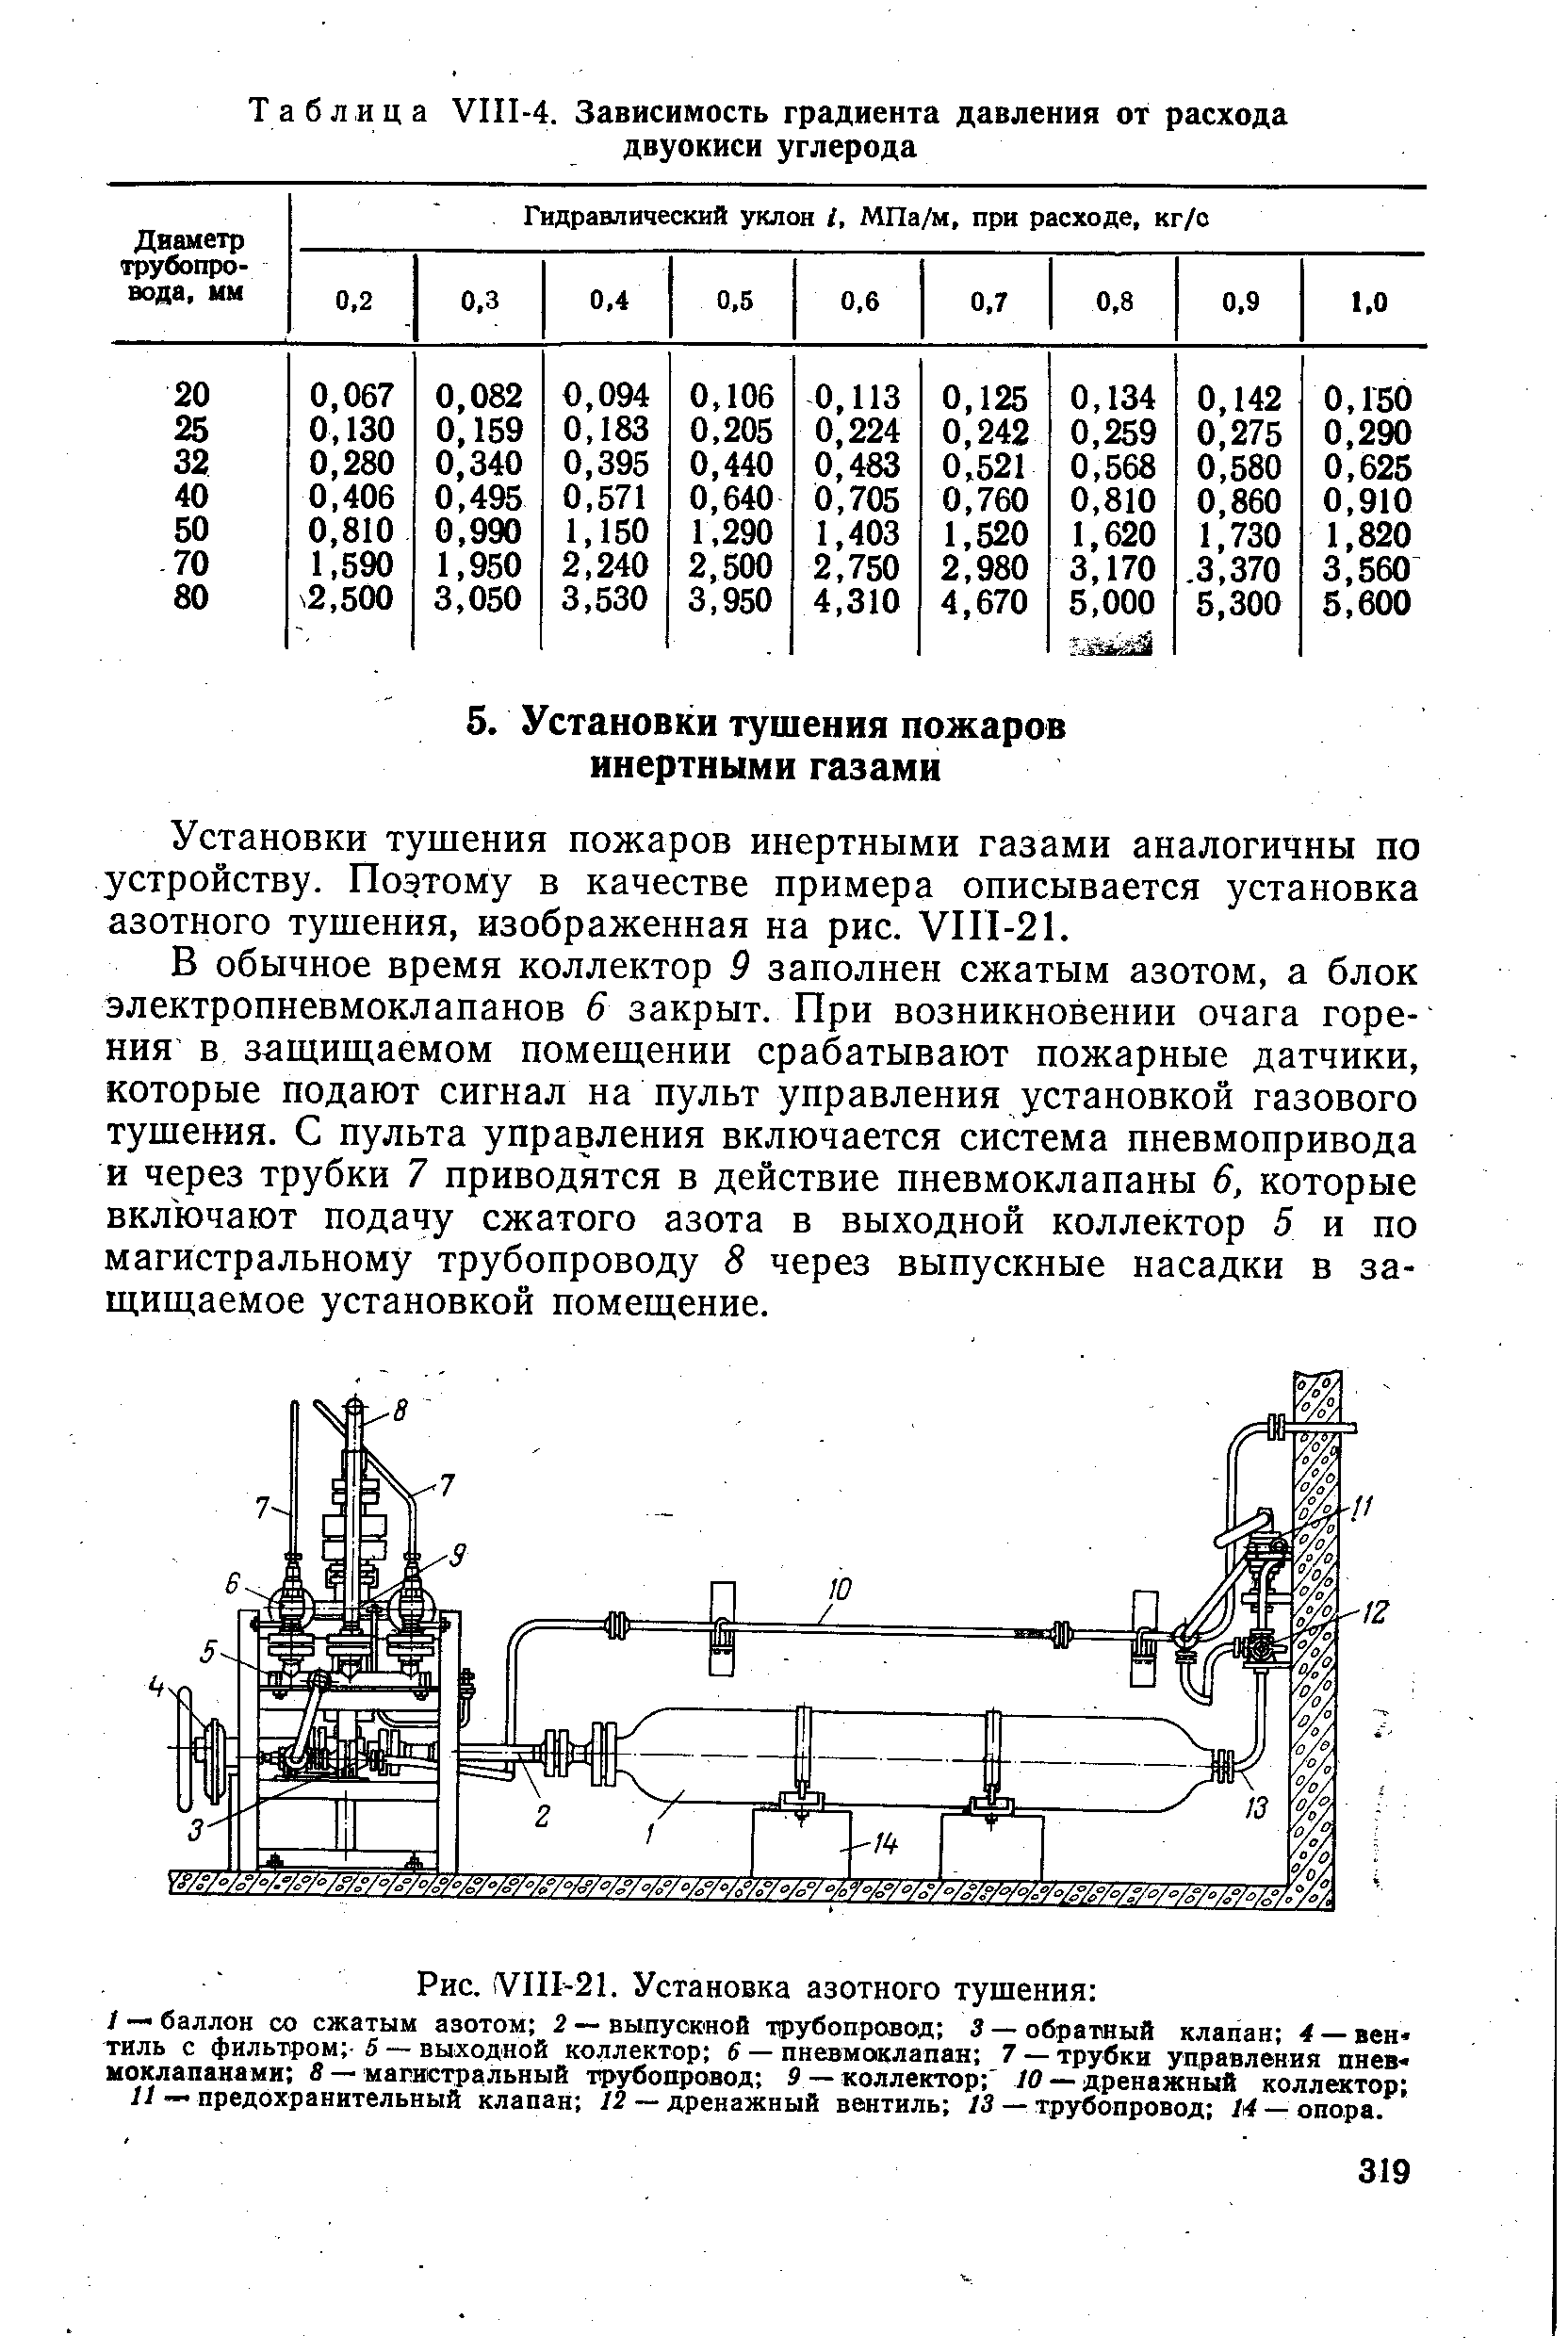 Установки тушения пожаров инертными газами аналогичны по устройству. Поэтому в качестве примера описывается установка азотного тушения, изображенная на рис. у П1-21.